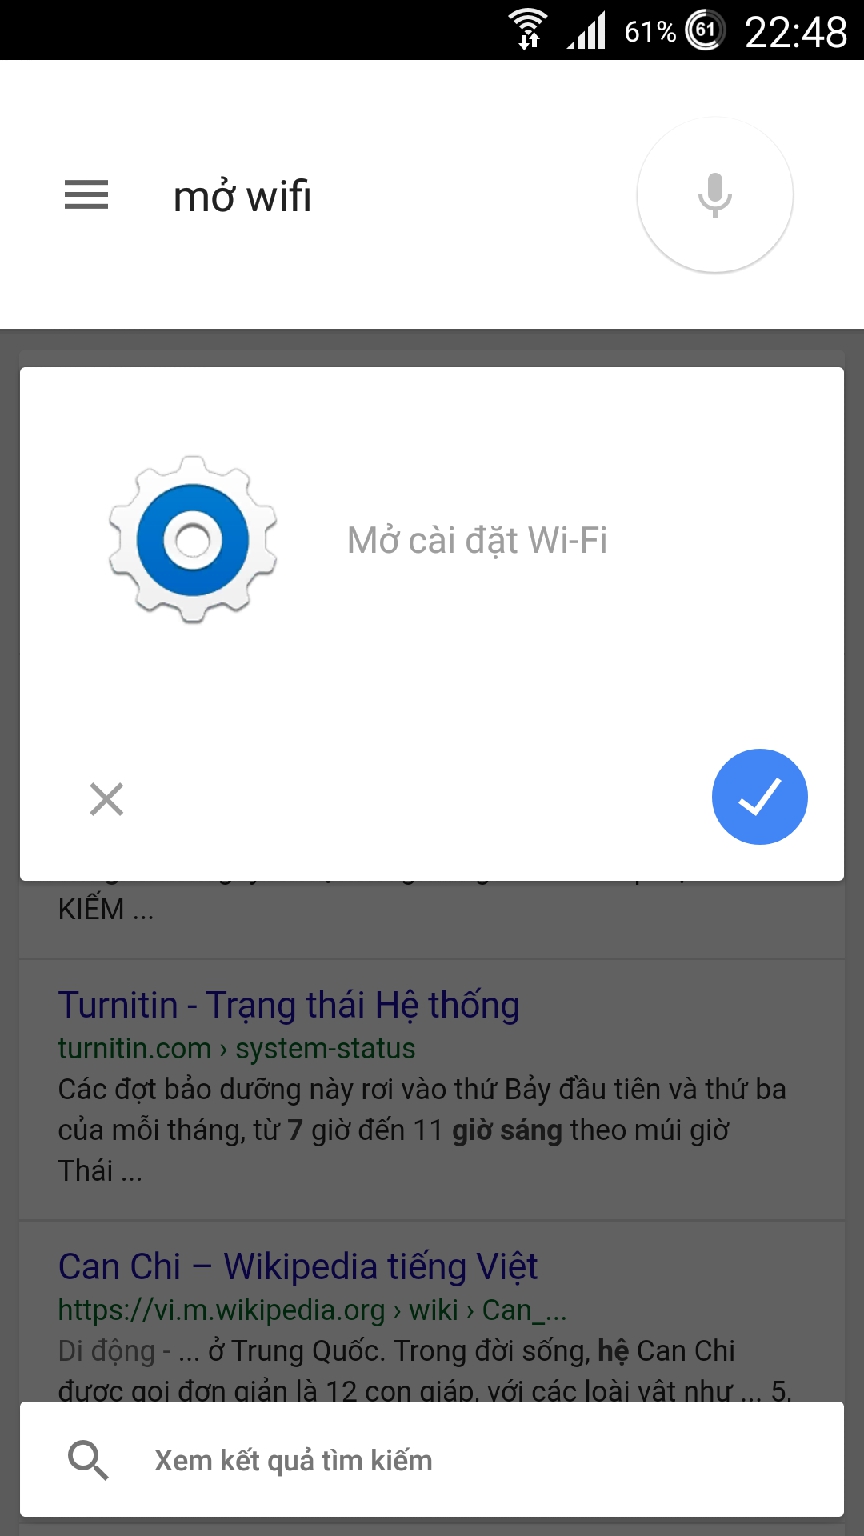 Hướng dẫn dùng Google Now tìm kiếm giọng nói bằng tiếng Việt, bạn đã thử chưa? Dunggooglenowtimkiemgiongnoibangtiengviet7